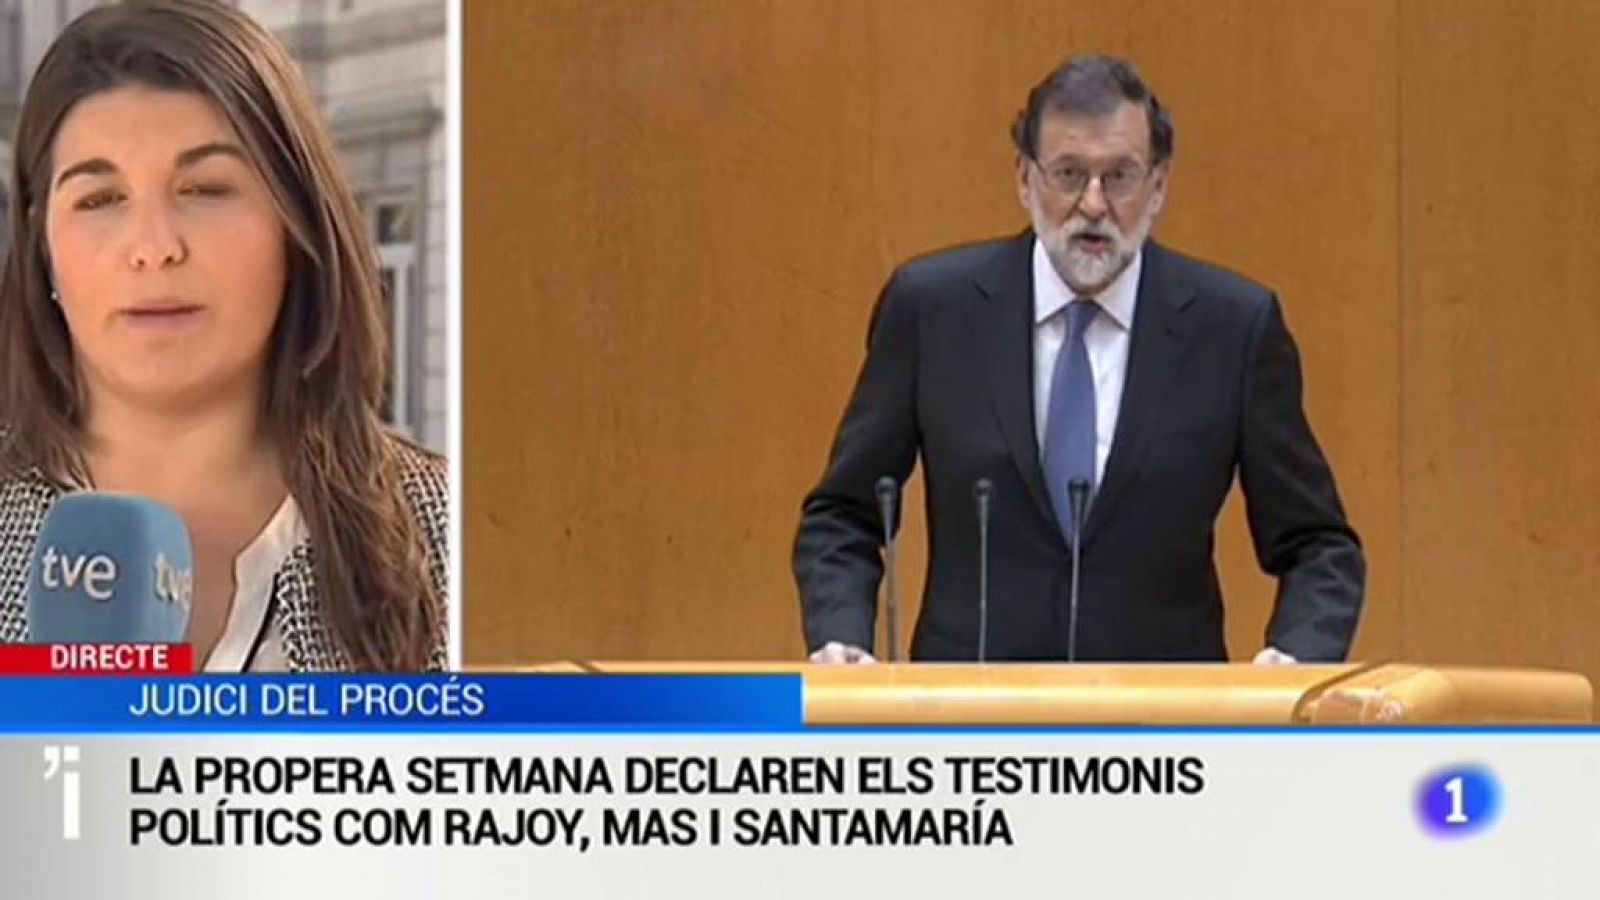 L'expresident Rajoy declararà dimarts